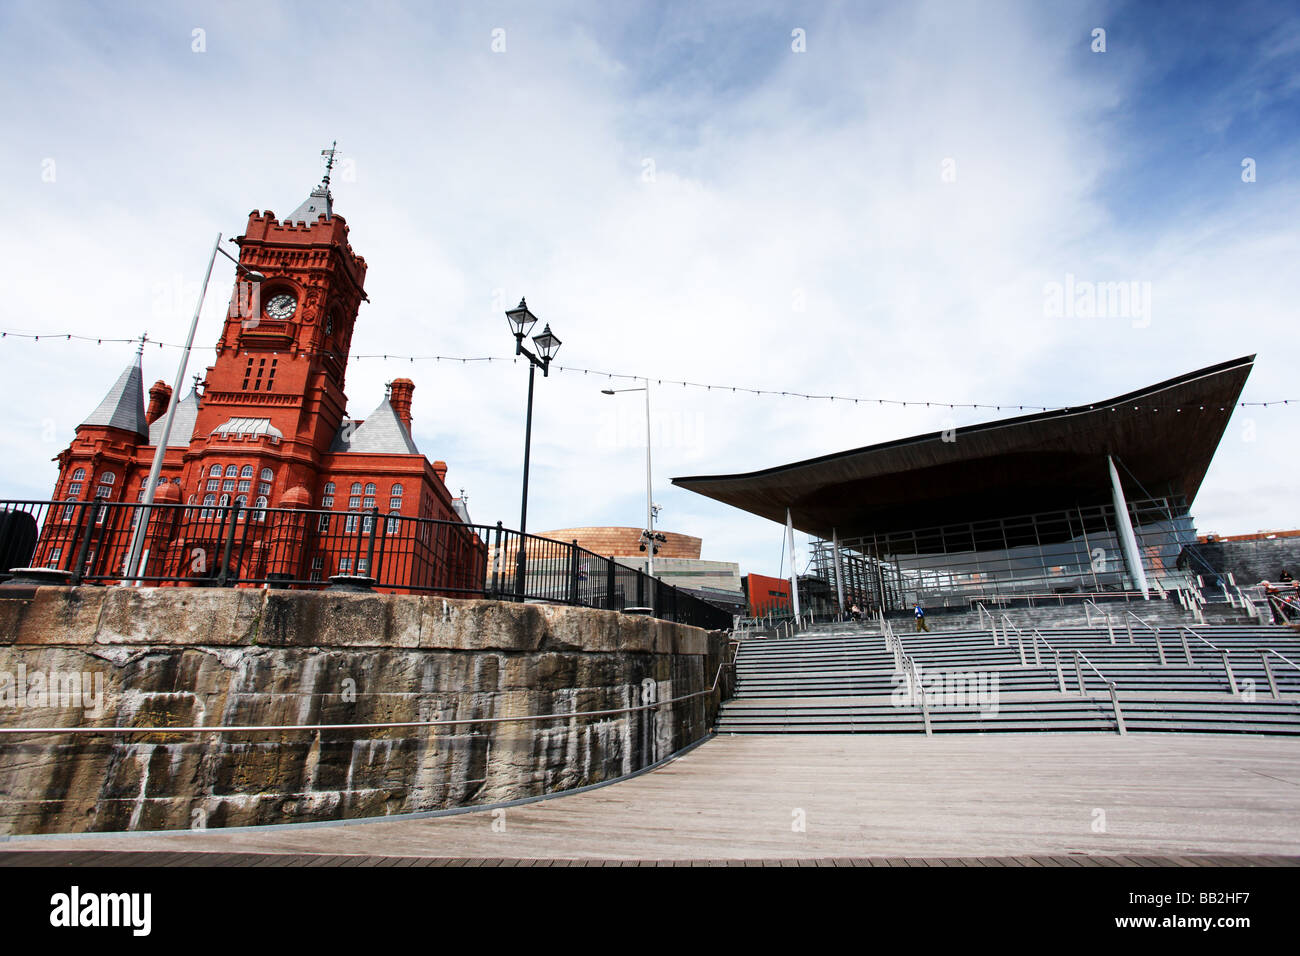 L'Assemblée nationale du Pays de Galles et Pierhead bâtiments donnant sur la baie de Cardiff et du front de mer, dans le sud du Pays de Galles, Royaume-Uni Banque D'Images